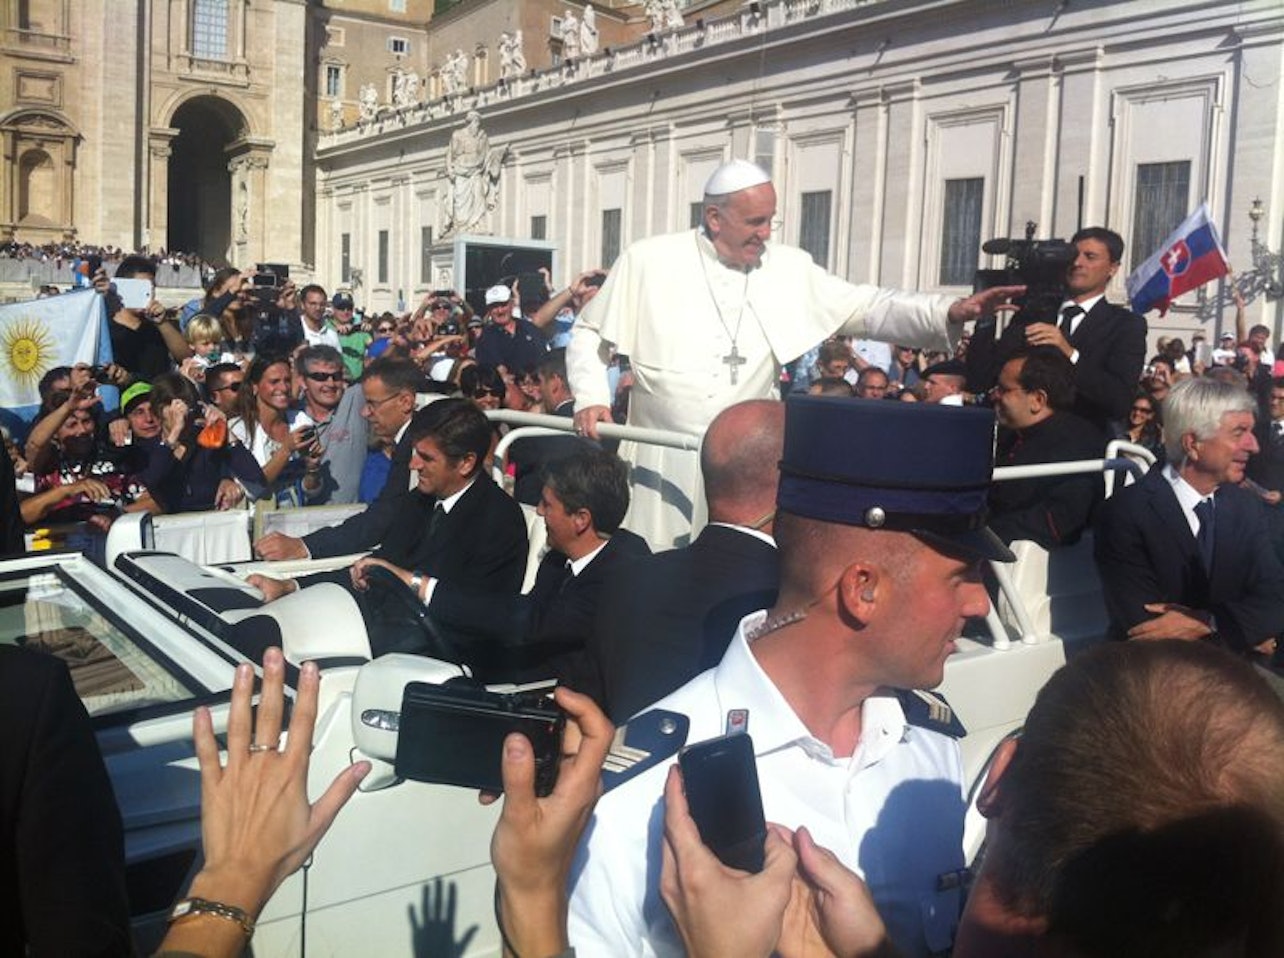 Audiência Papal e Basílica de São Pedro: Visita Guiada - Acomodações em Roma